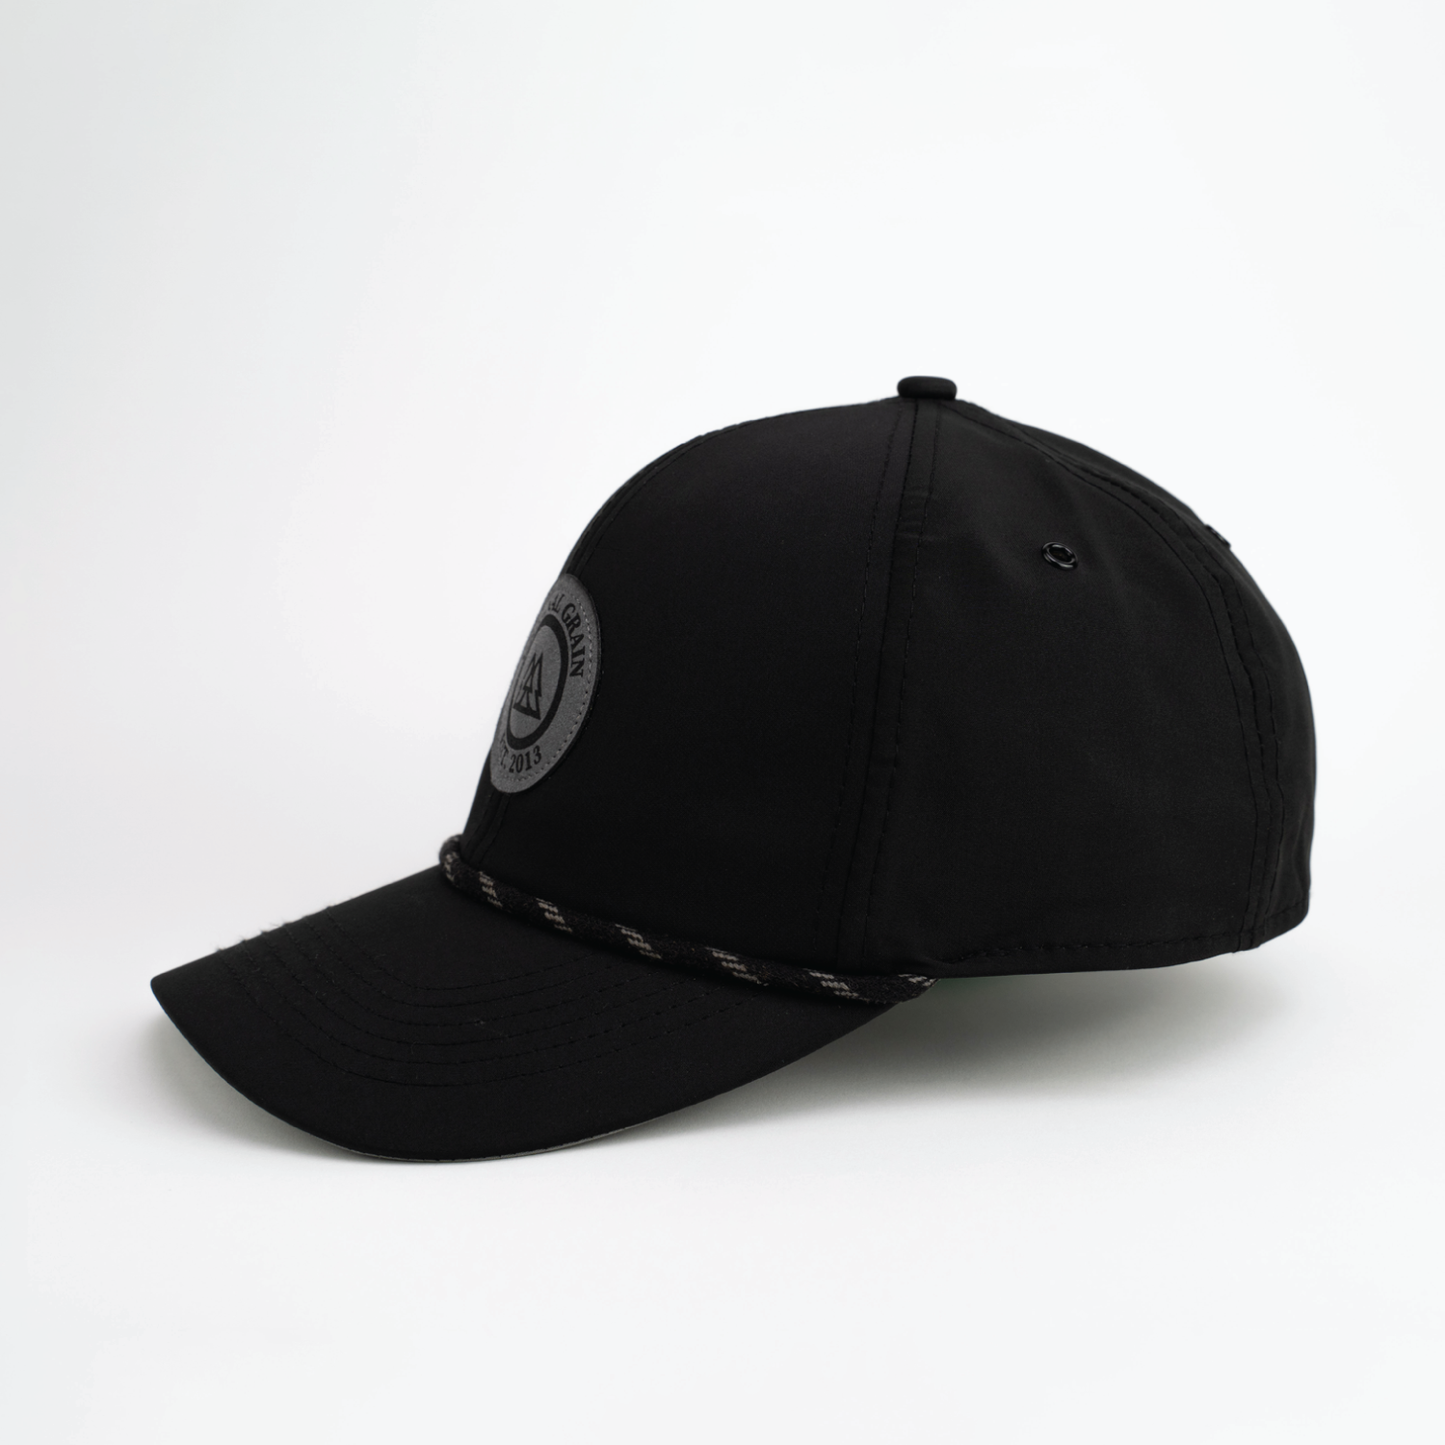 Hut aus schwarzem und anthrazitfarbenem Wildleder mit Originalnarbung